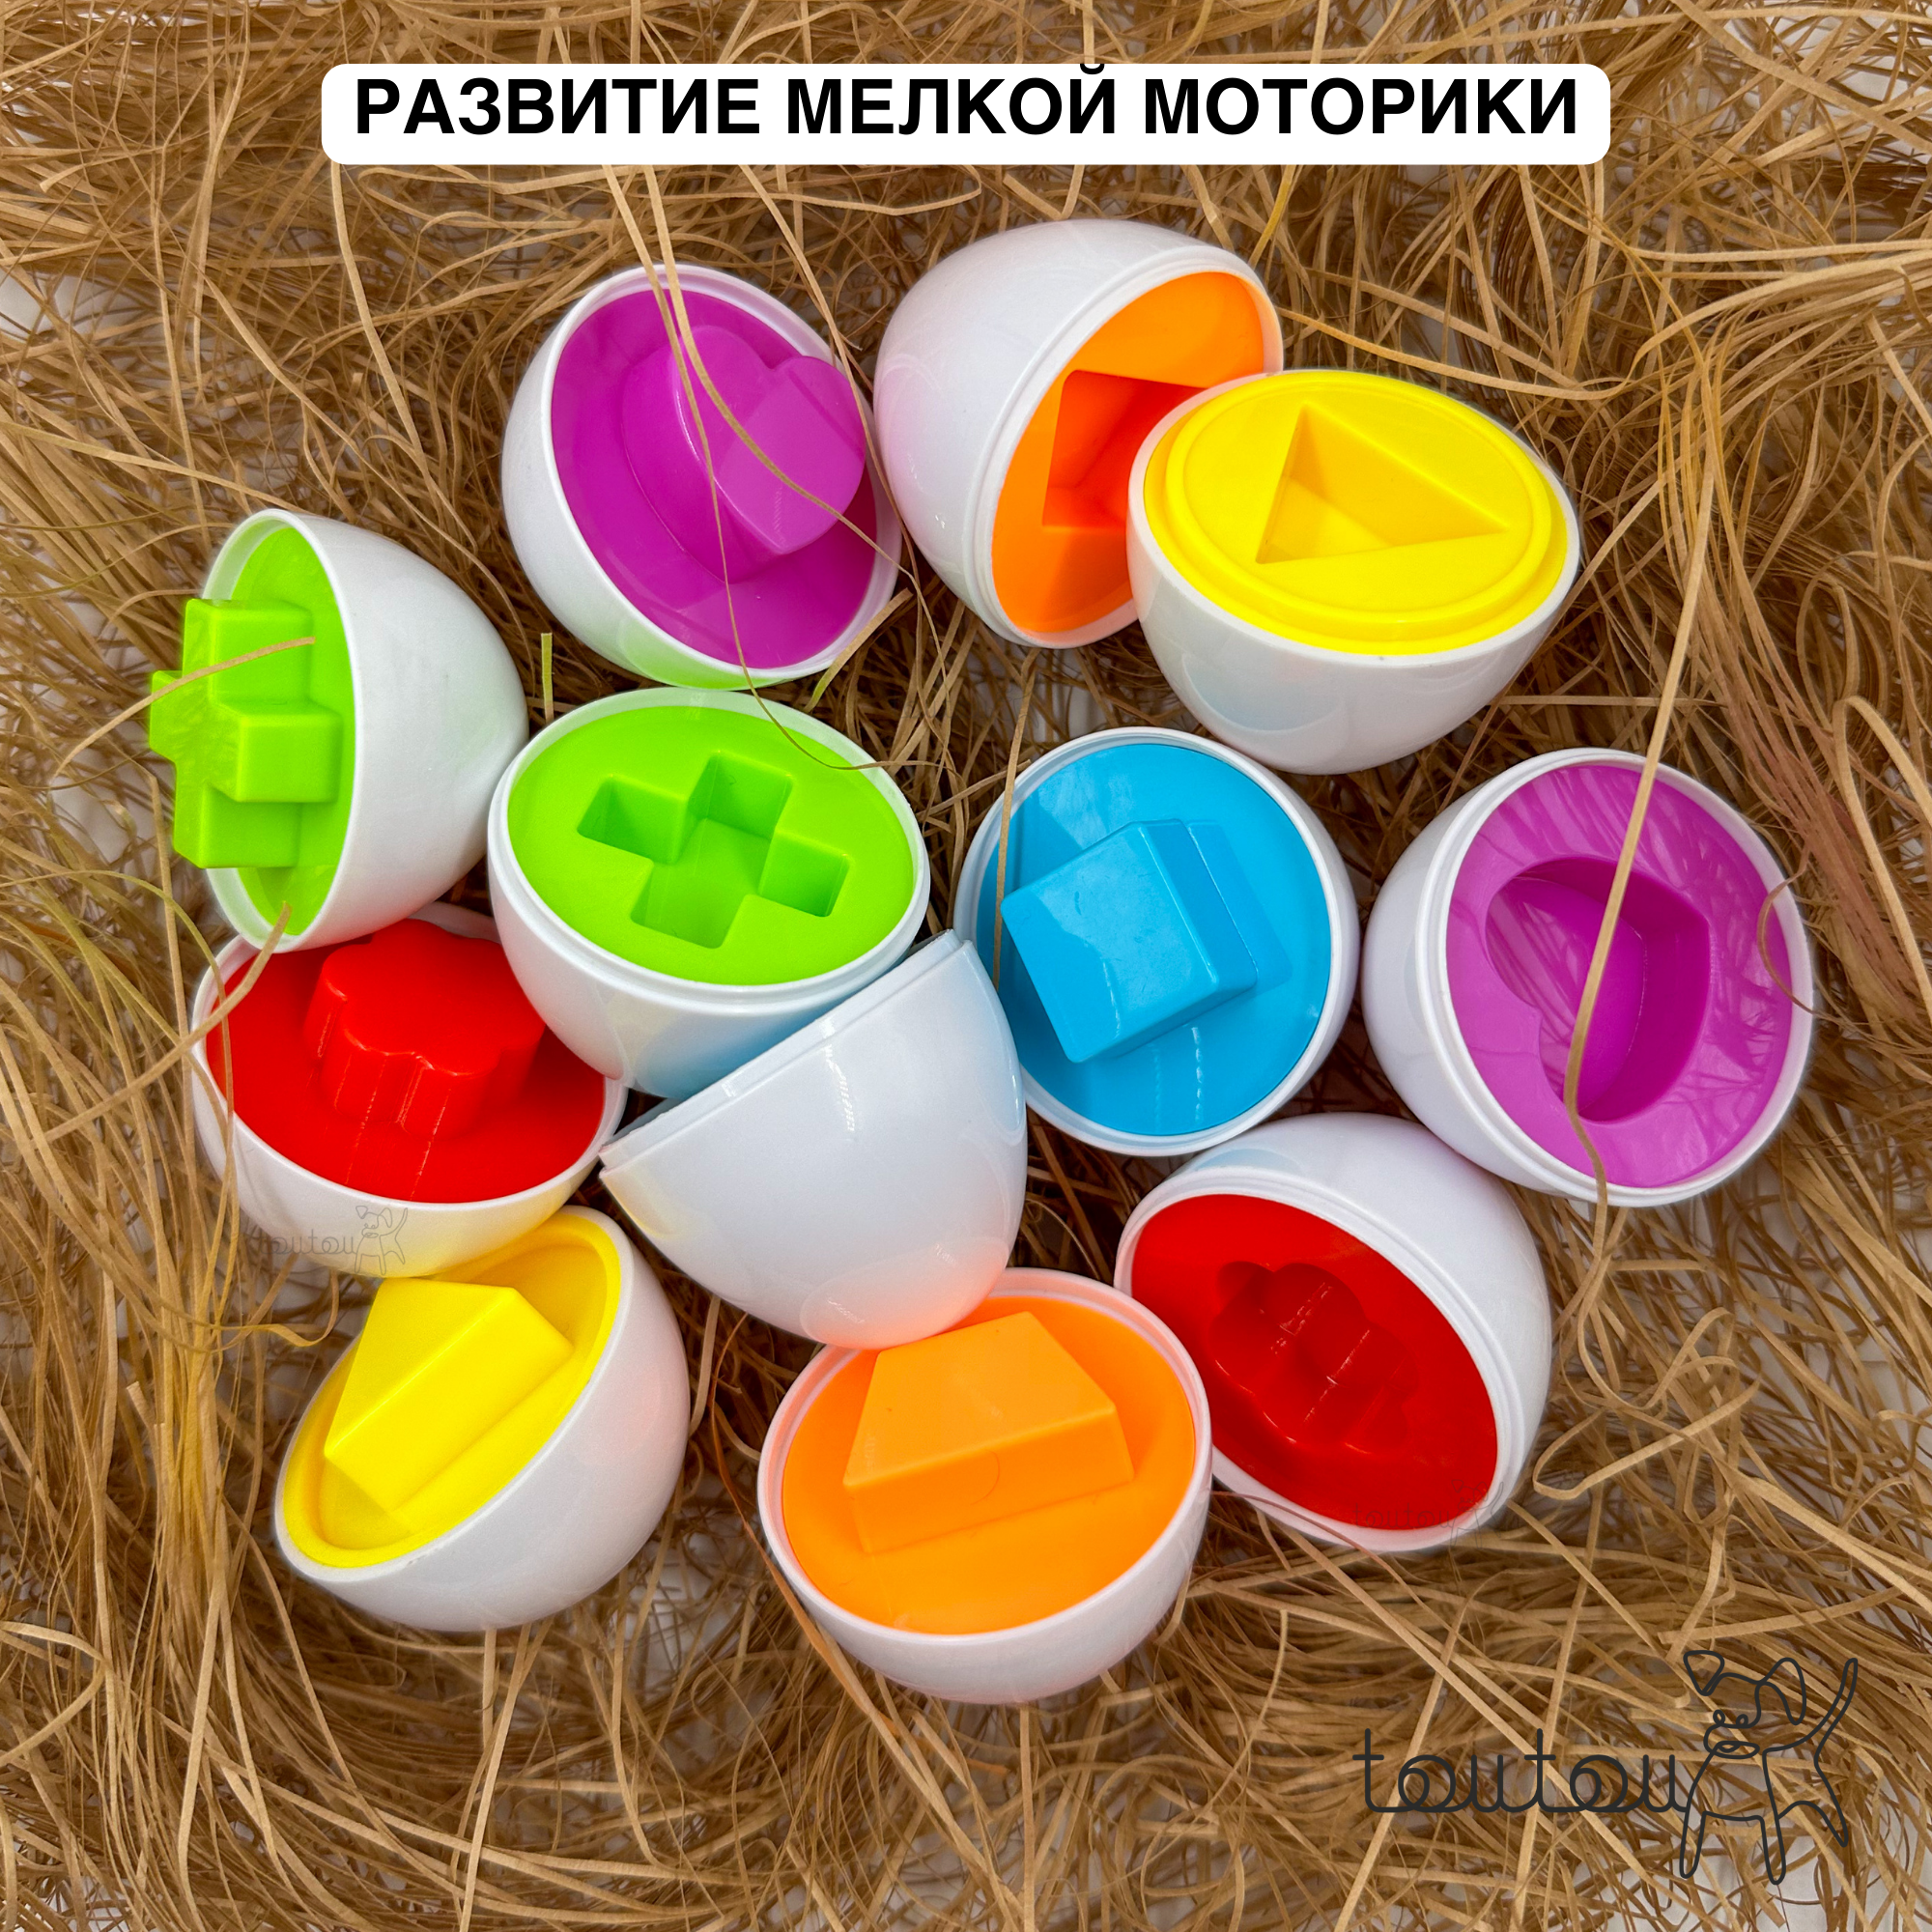 Развивающий набор сортер яйца в коробке для детей